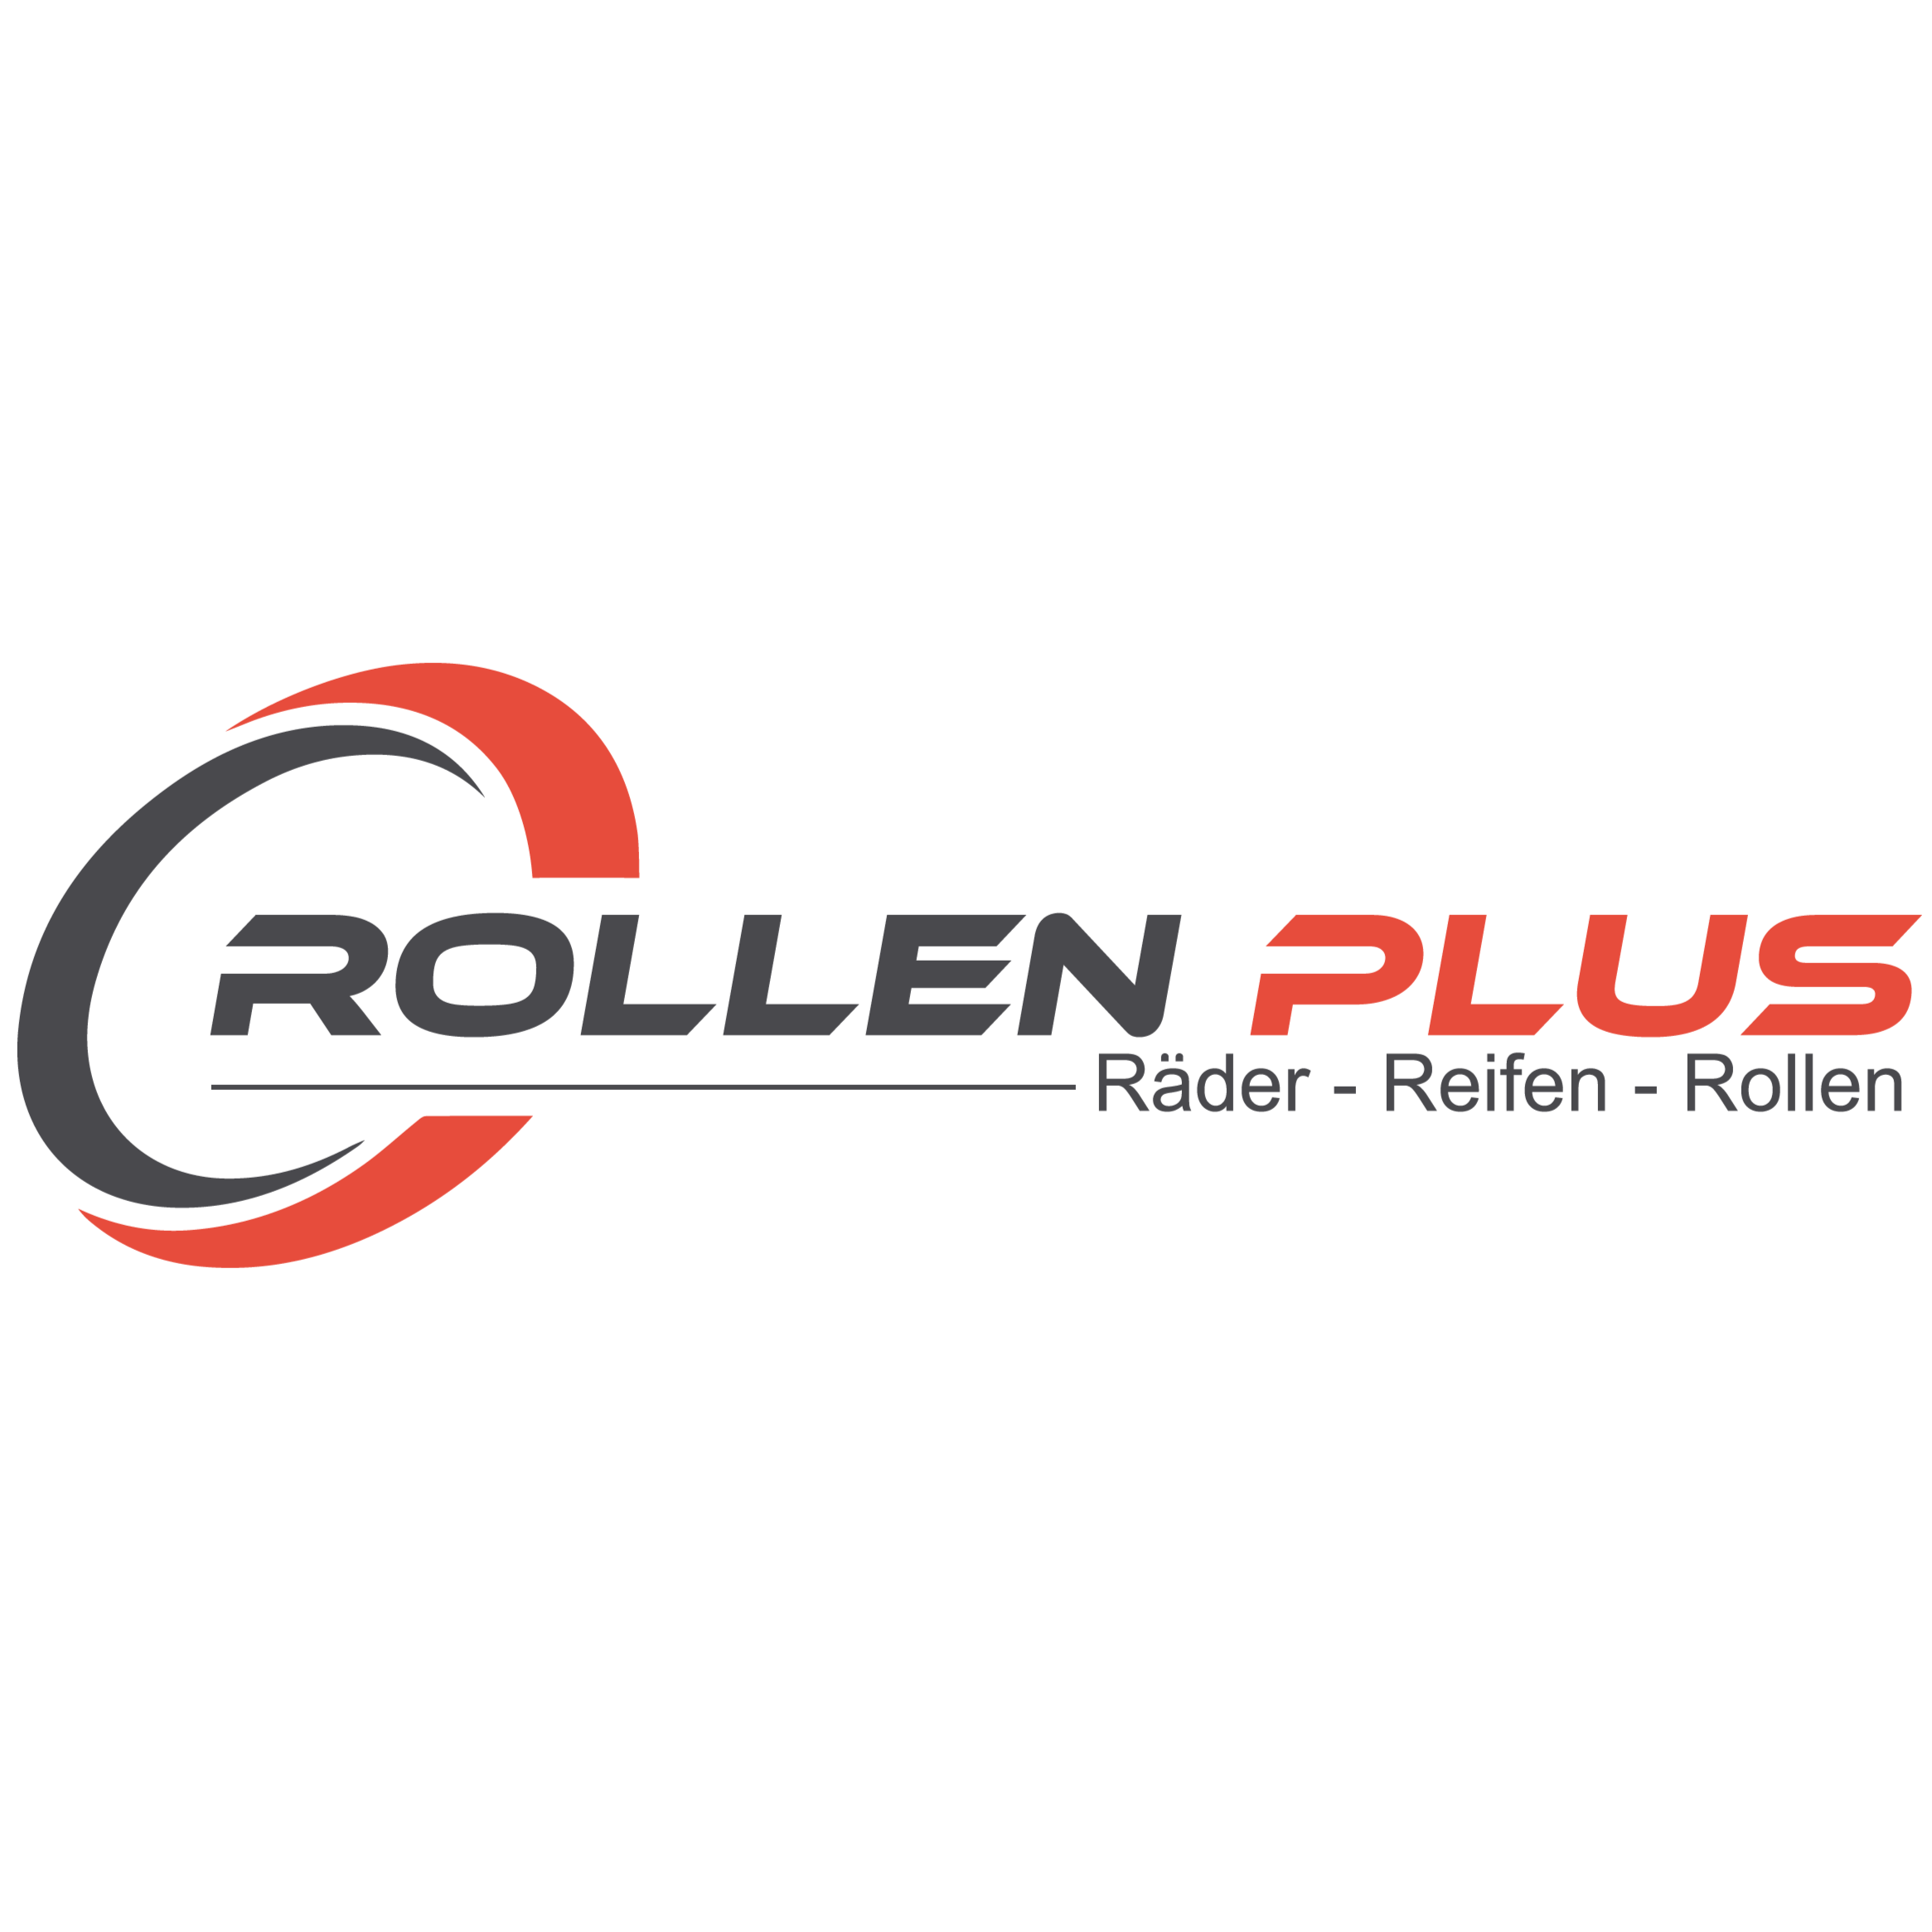 ROLLENPLUS.de in Eschborn im Taunus - Logo